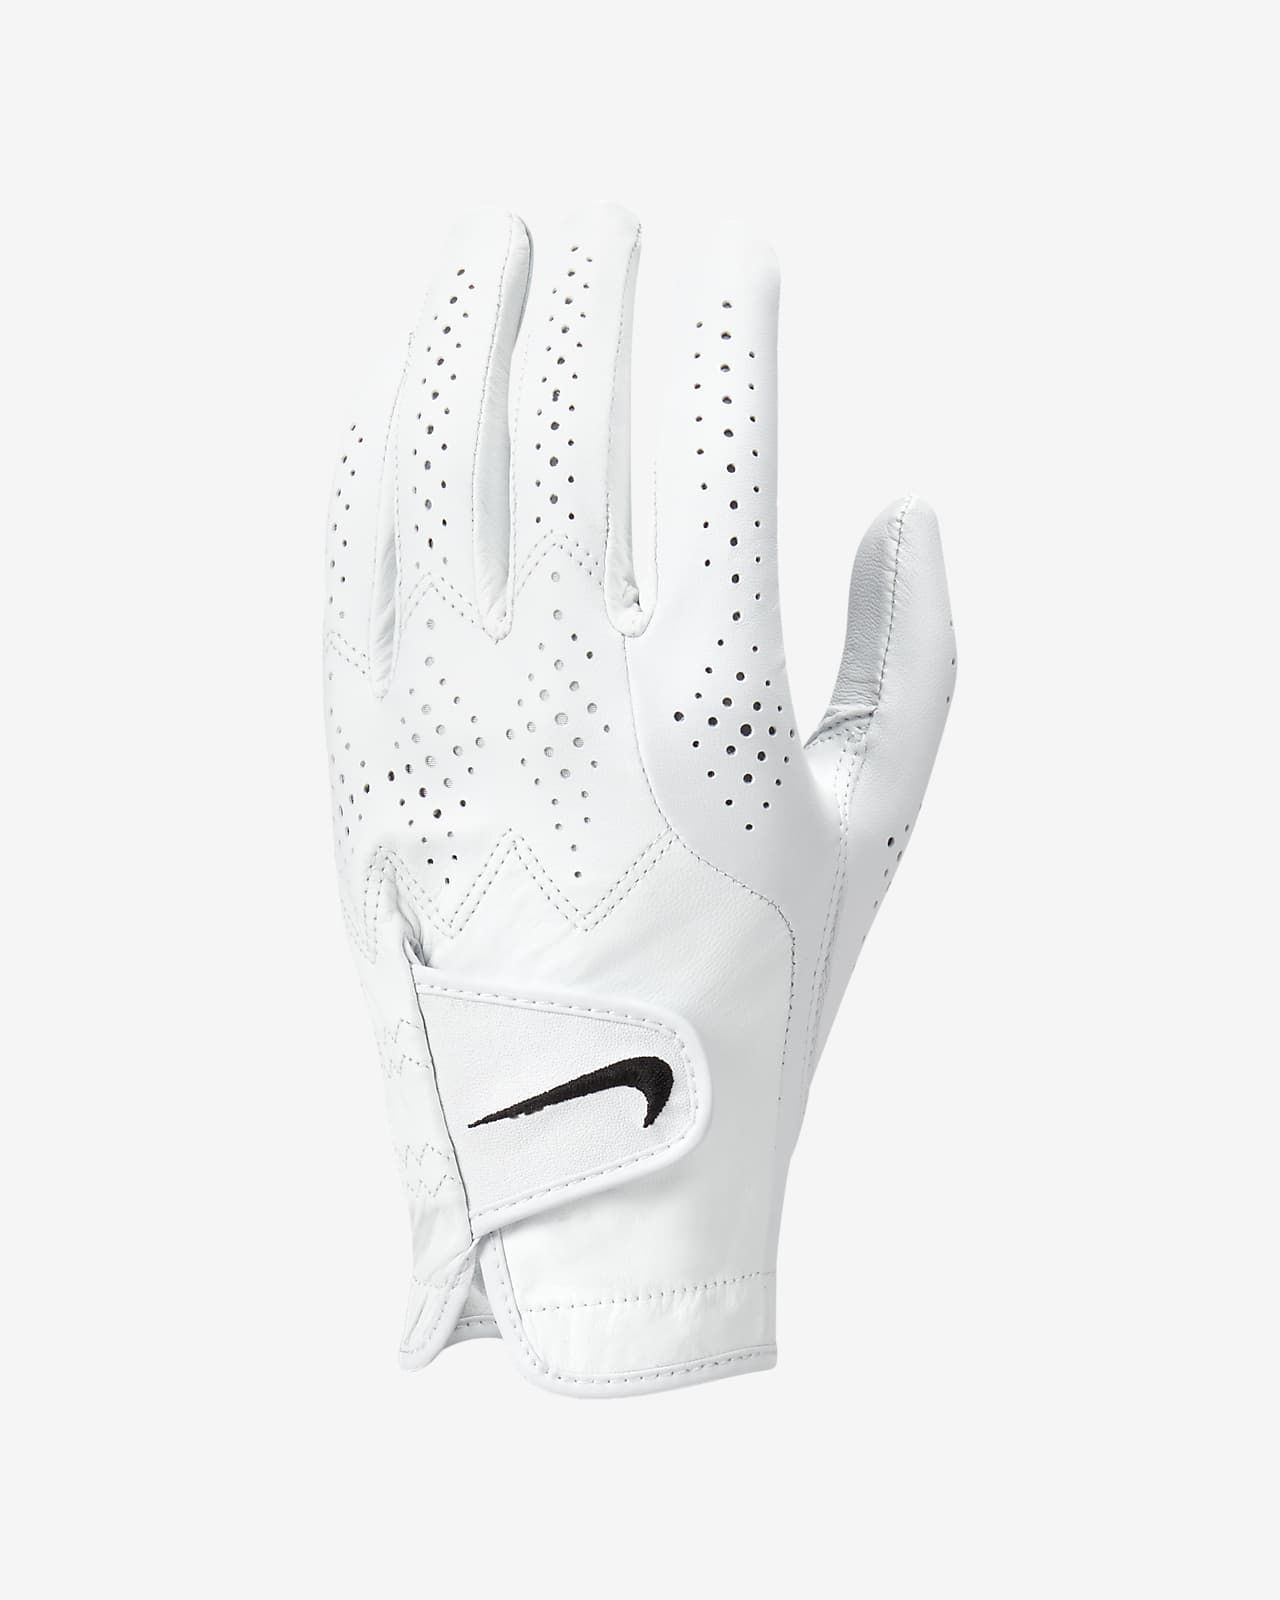 Voorstellen Klassiek Bomen planten Nike Tour Classic 4 Men's Golf Glove (Left Regular). Nike.com